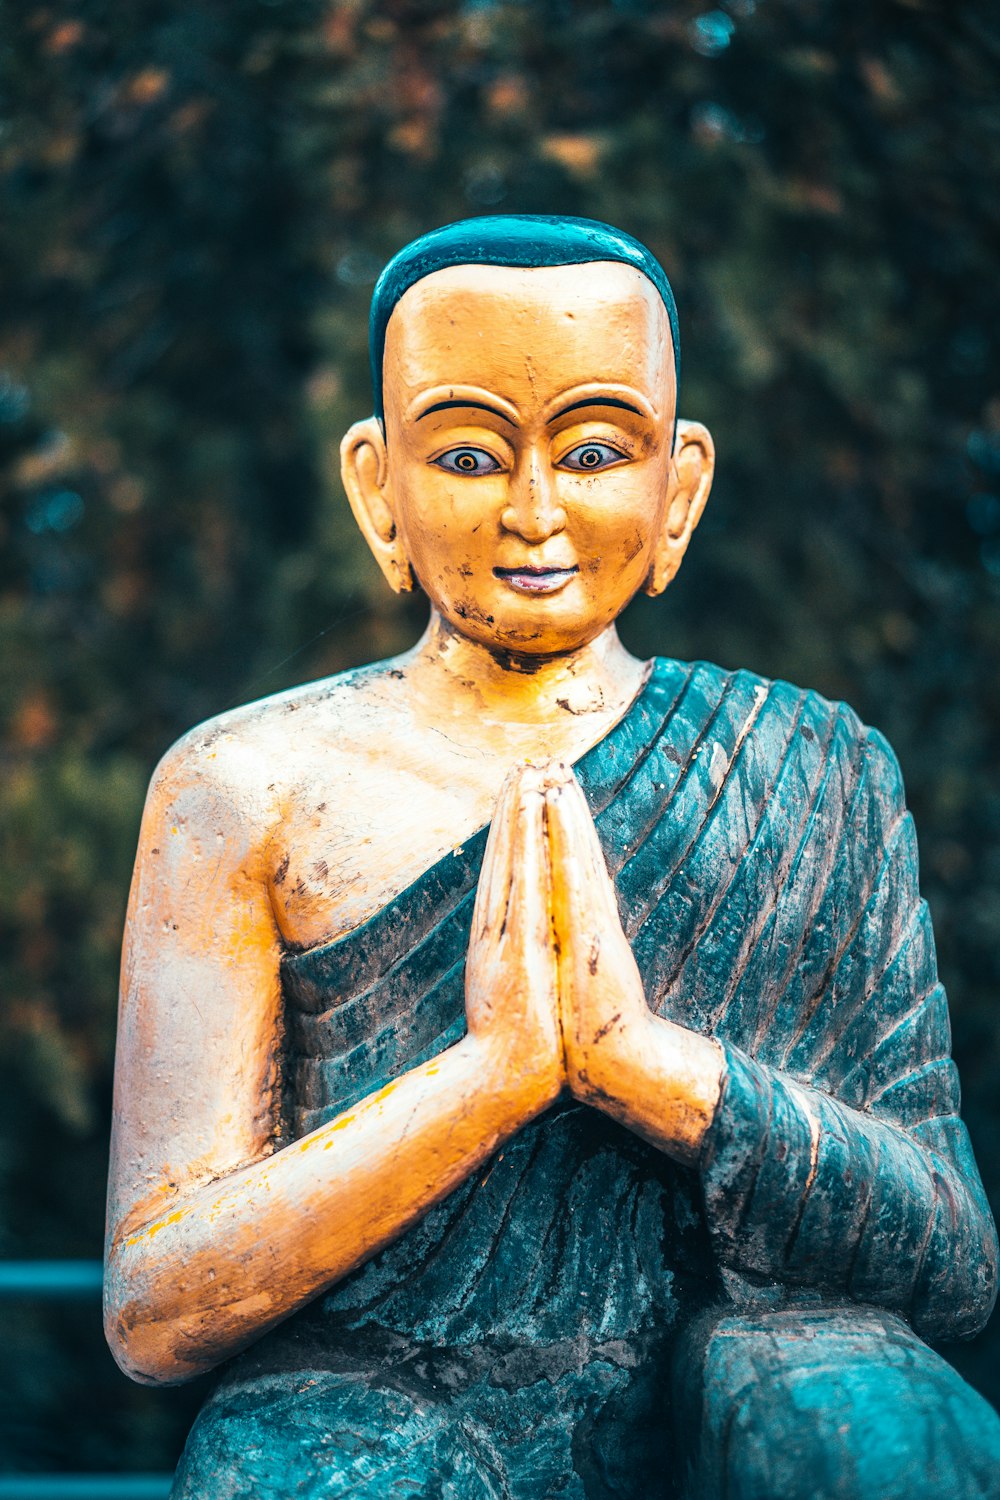 gold buddha statue in tilt shift lens